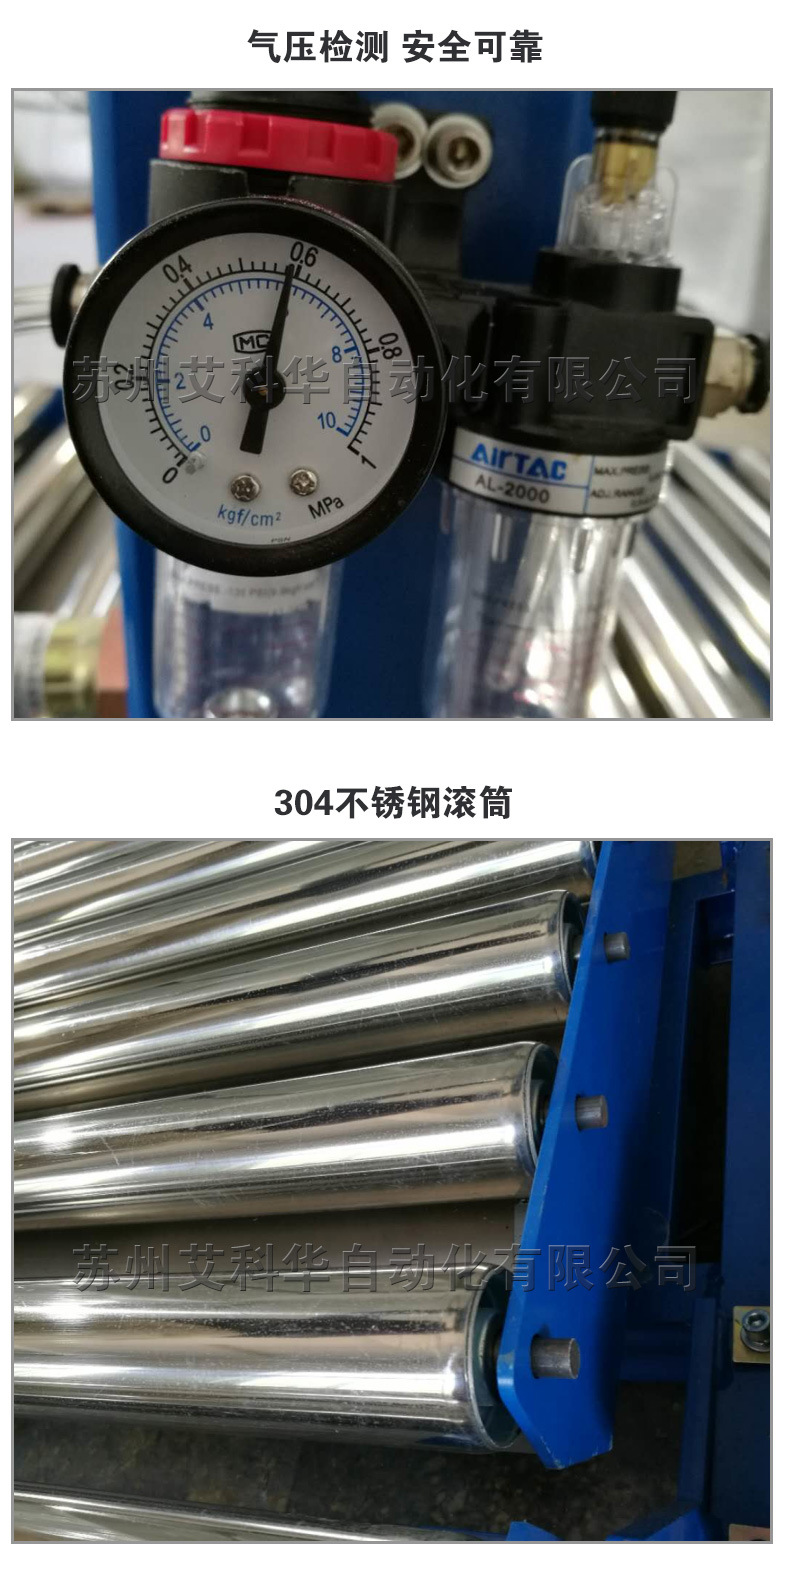 小型定量包装秤灌装机 液体灌装机生产厂家 定制生产灌装机示例图4